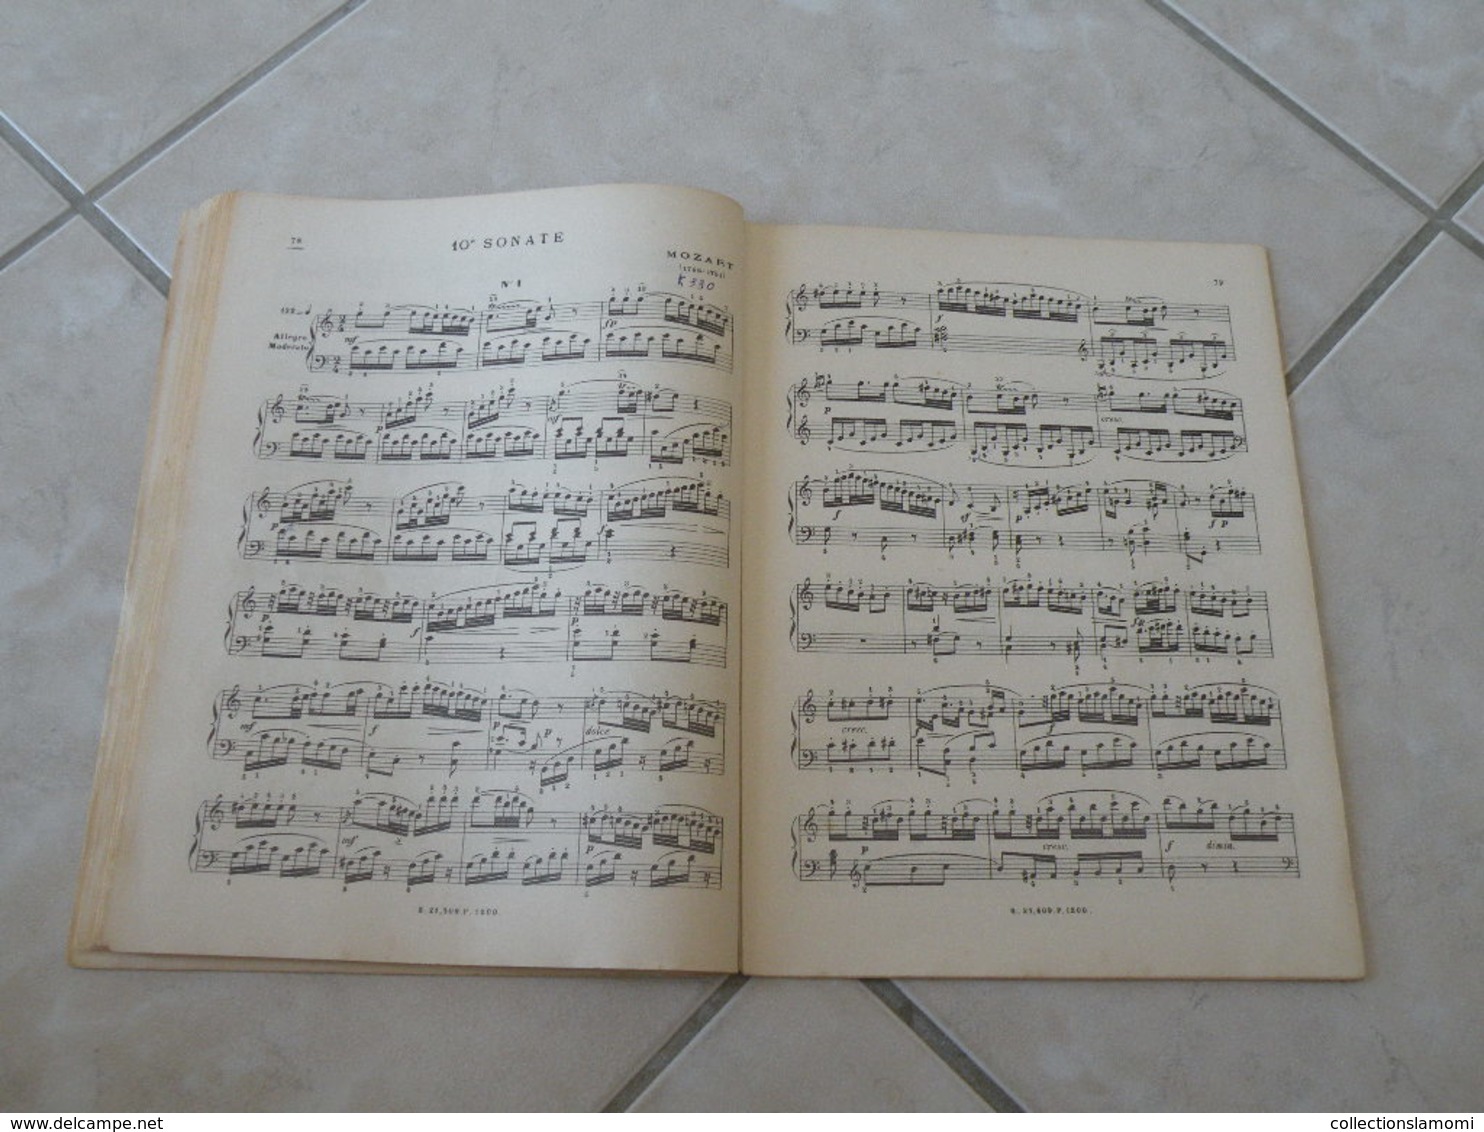 Les Classiques Favoris du Piano -(Voir les photos table des 40 titres )- Livre de Partition 106 pages